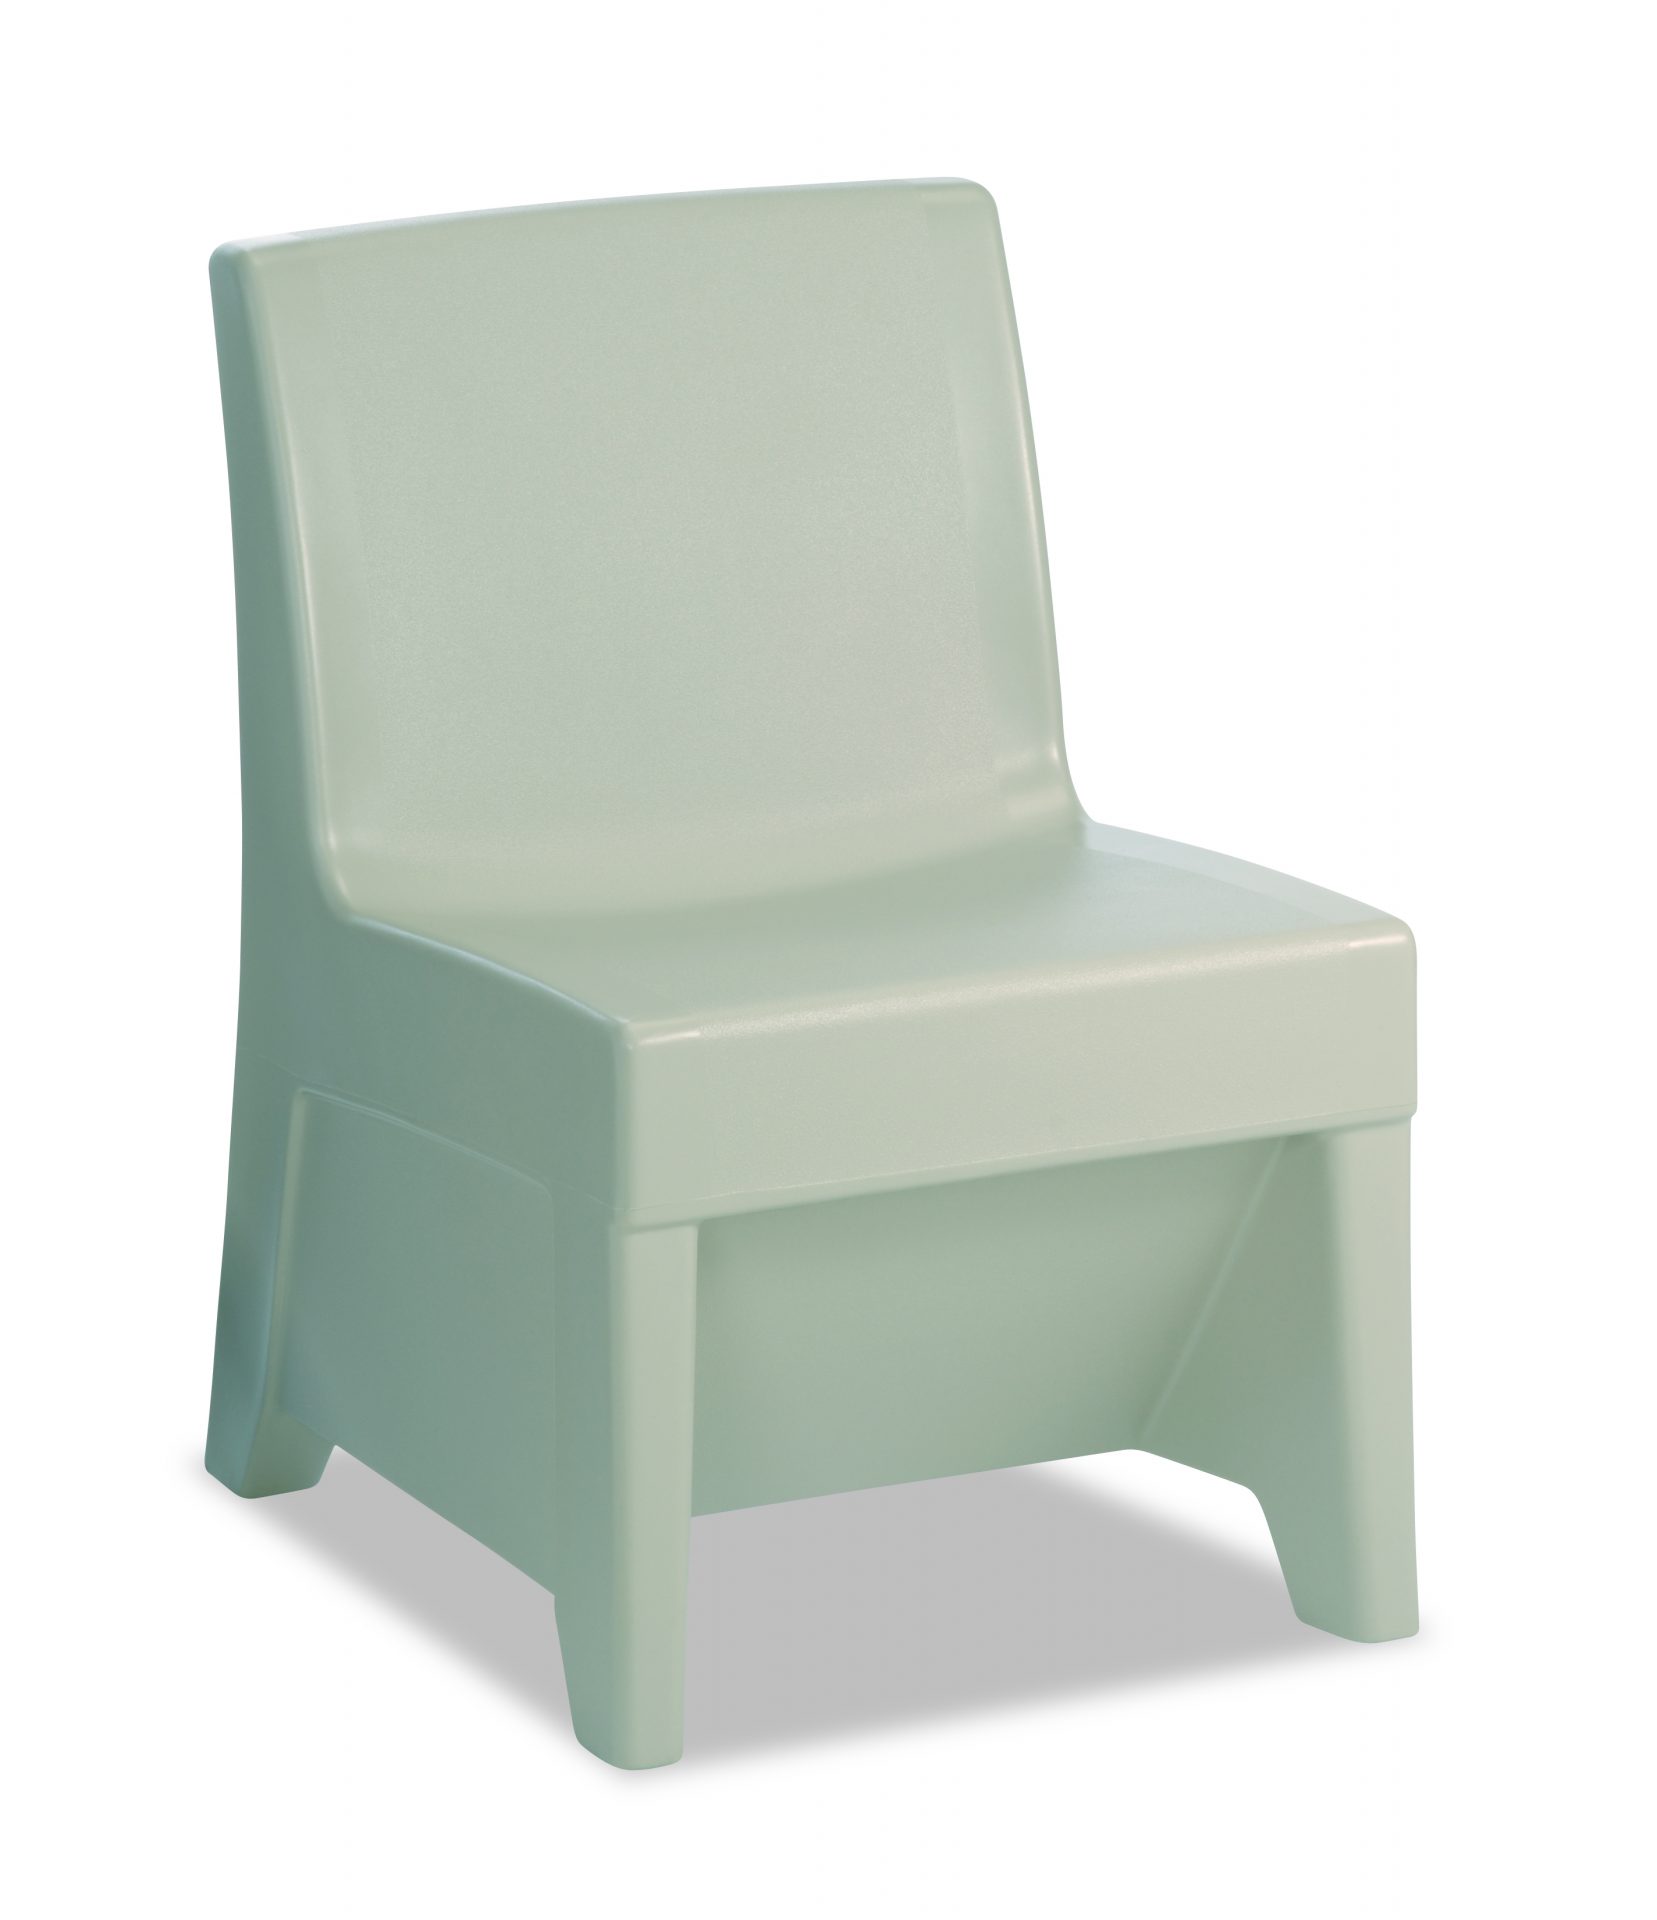 Canyon color ligature resistant chair